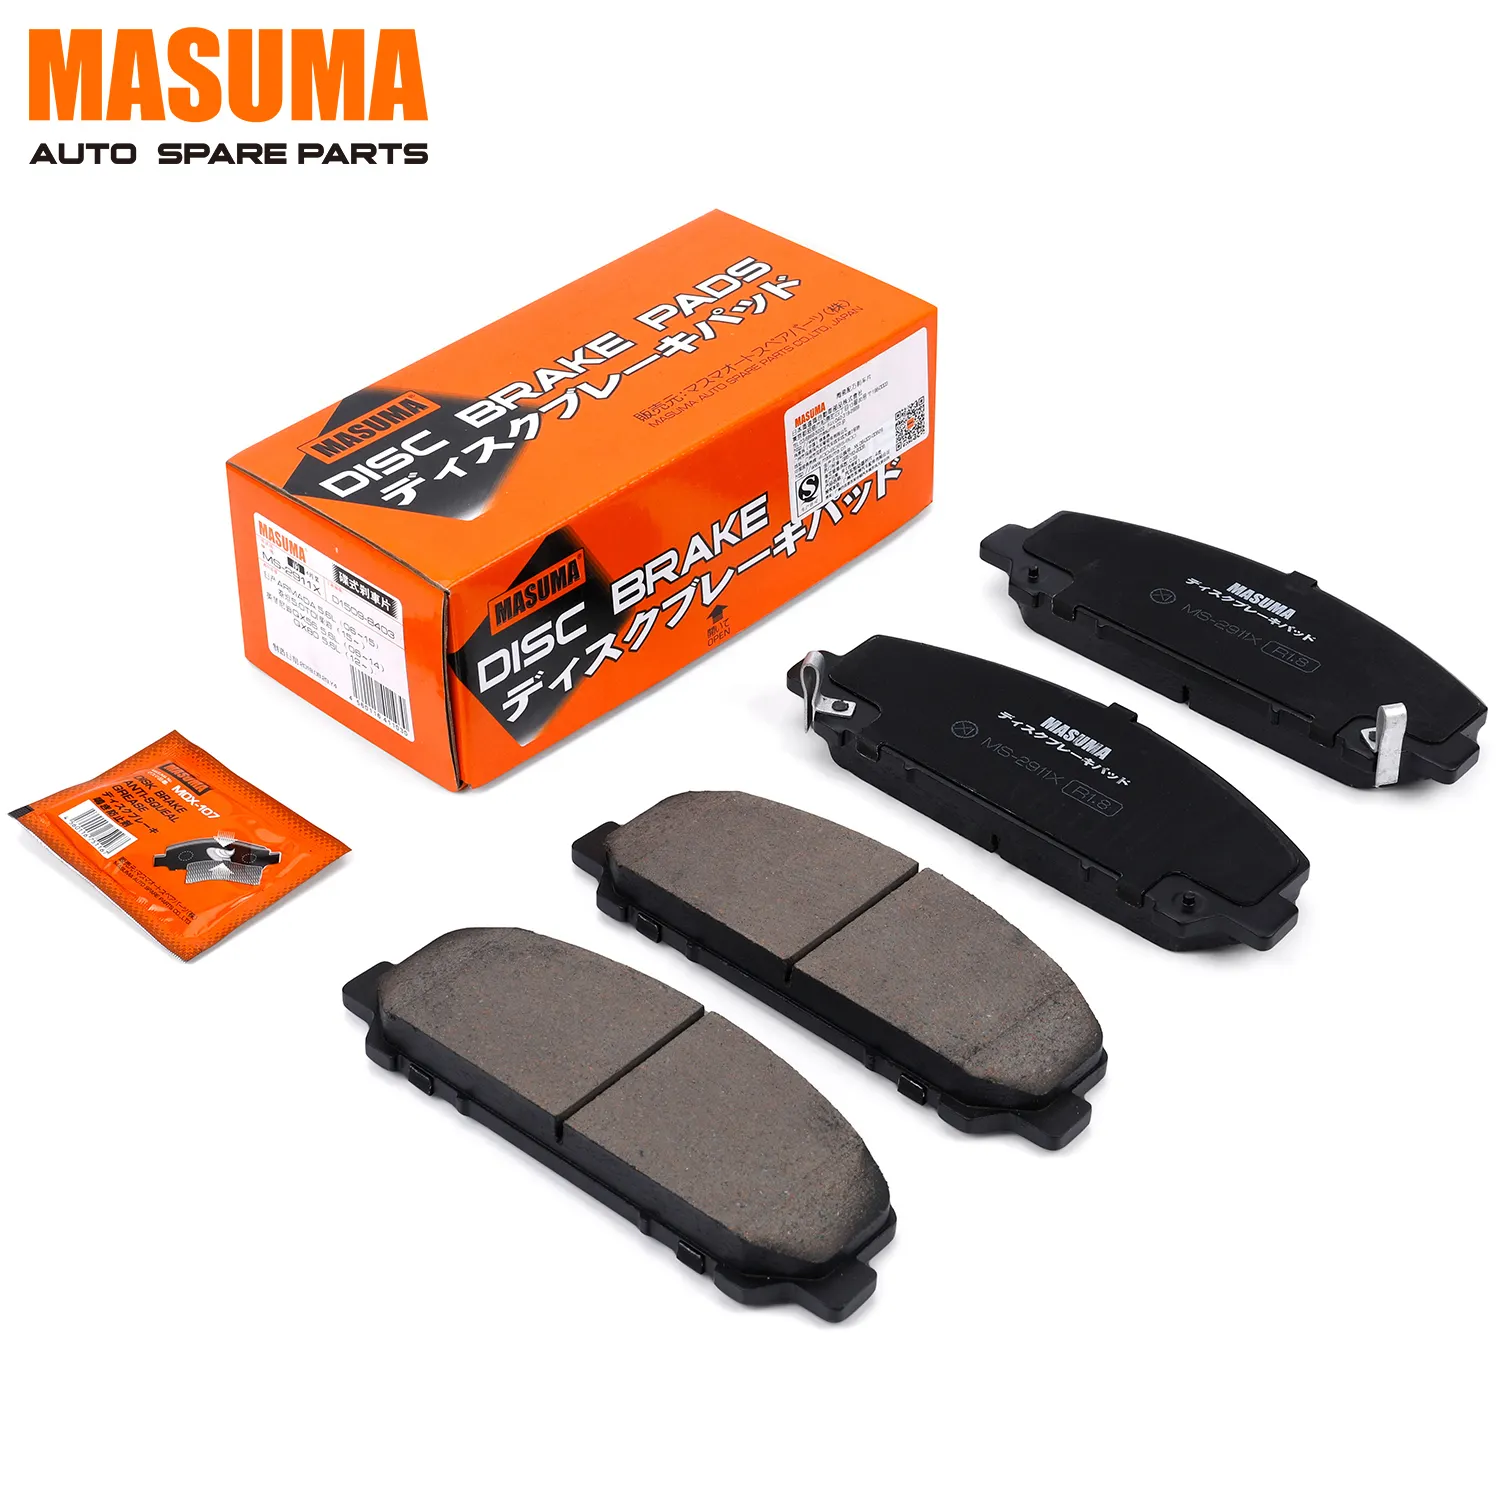 MS-2911X makuma-pastillas de freno de cerámica para coche, piezas de reparación de automóviles, sin ruido, D1509-8403, D1060ZC60J, Infiniti